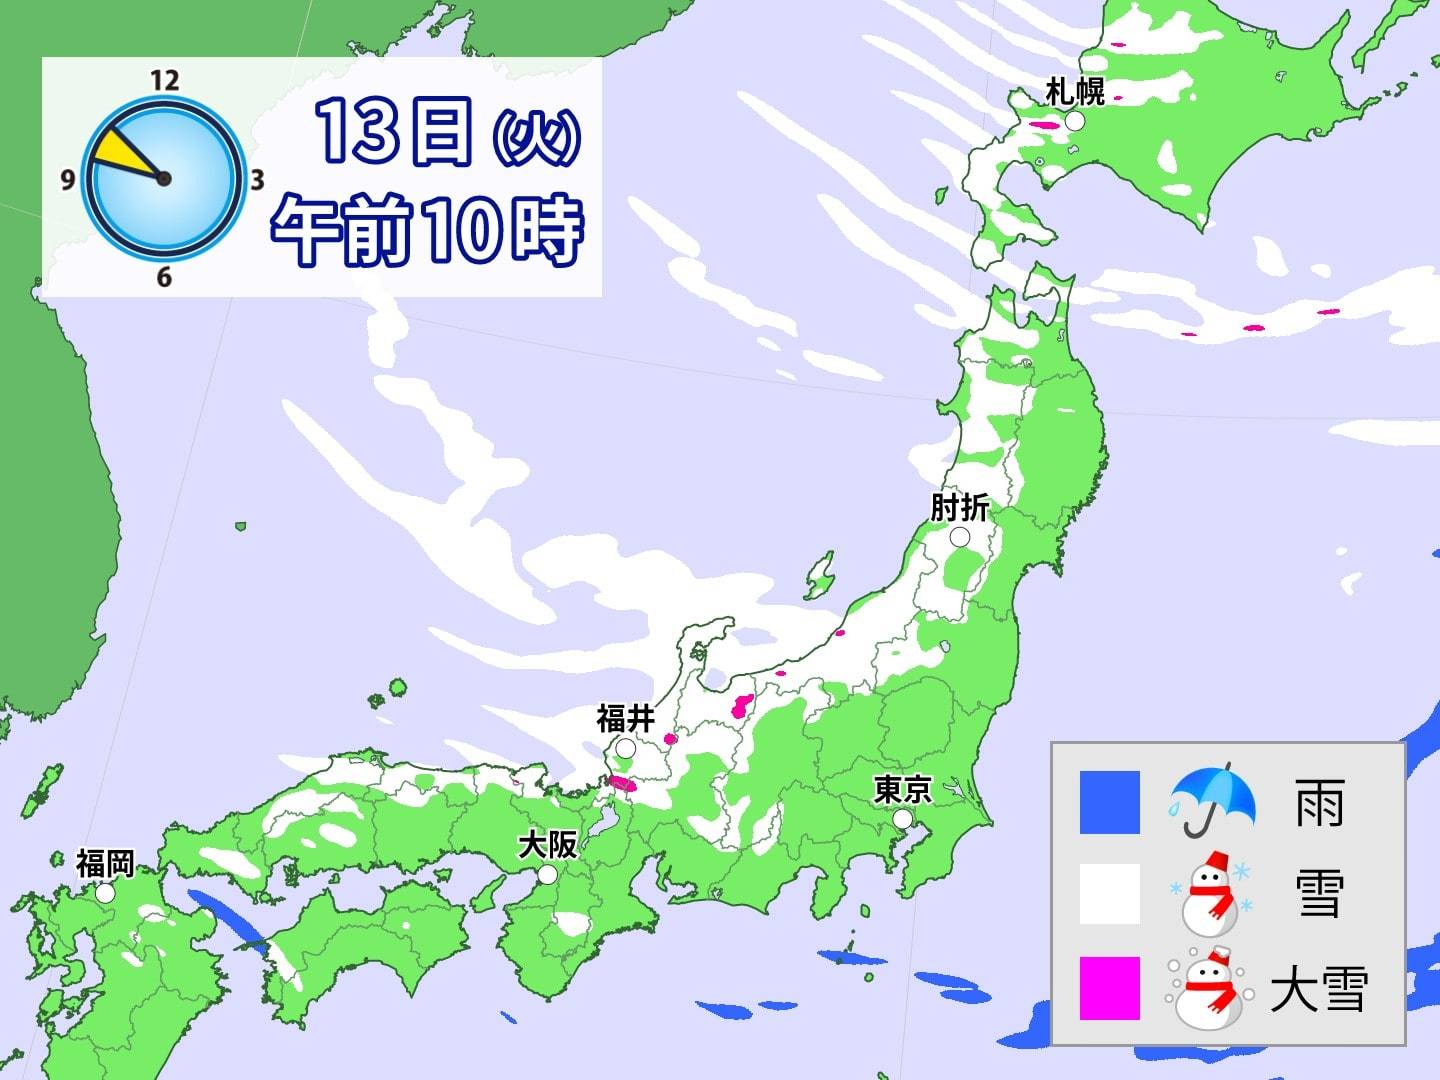 日本海側で記録的な積雪 北陸 東北を中心にさらなる大雪に警戒 防災 危機管理トピックス リスク対策 Com 新建新聞社